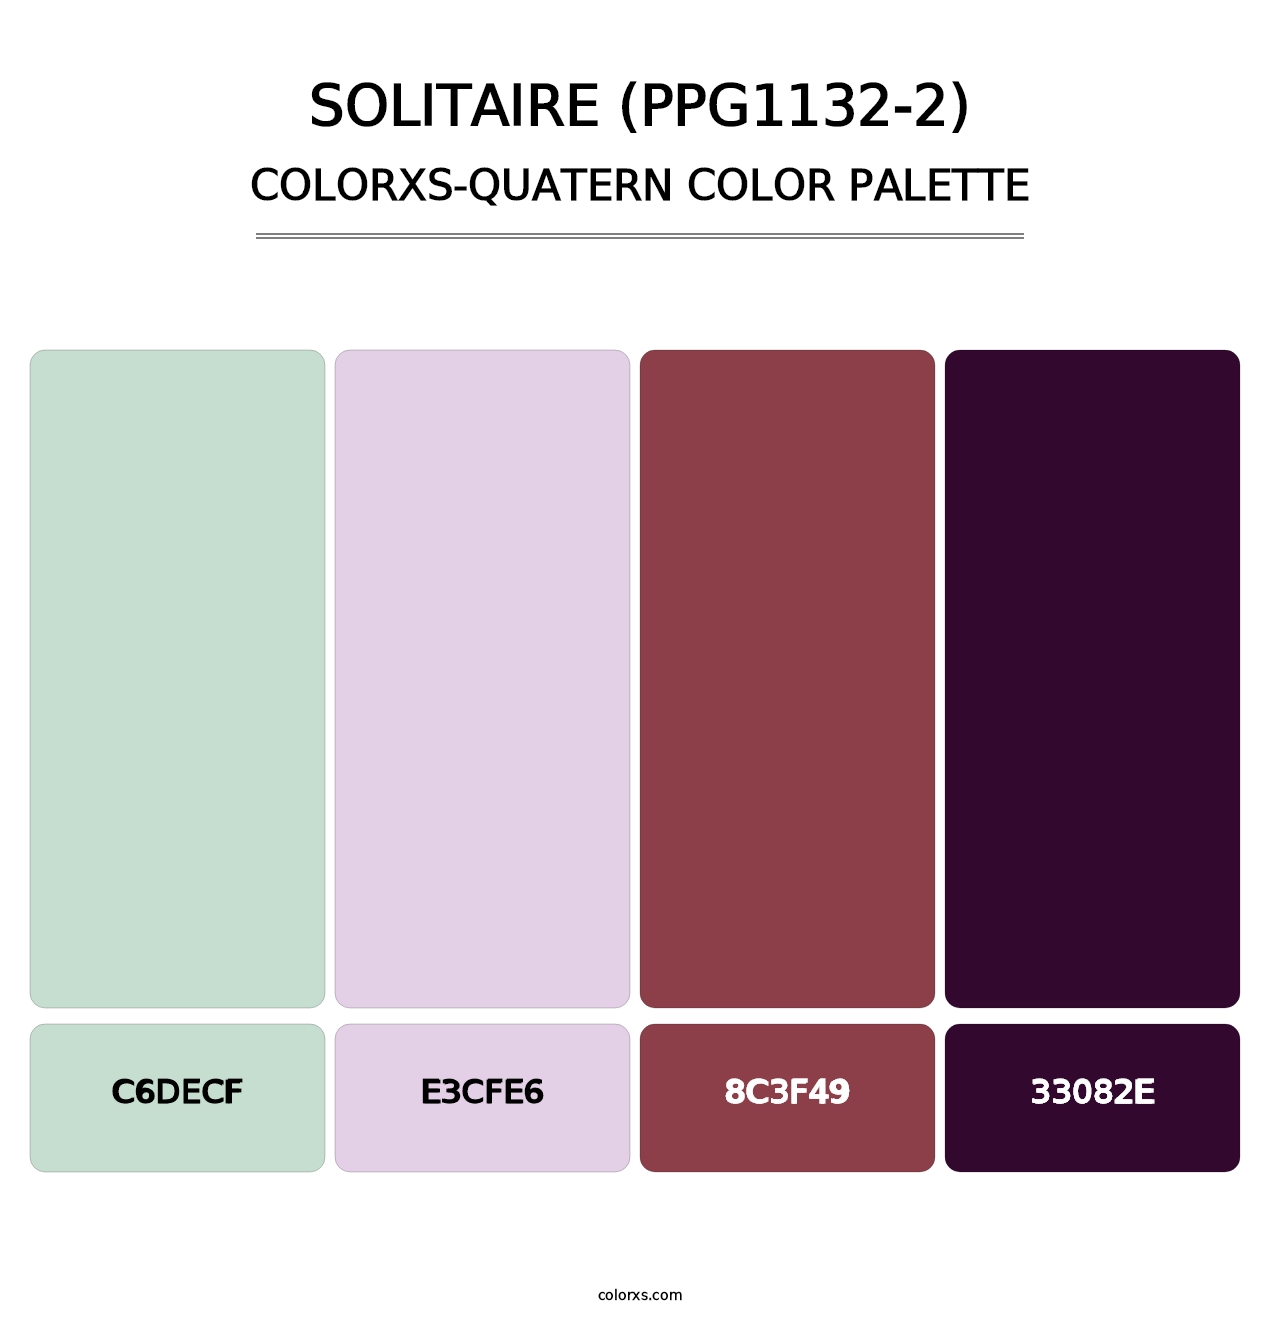 Solitaire (PPG1132-2) - Colorxs Quatern Palette